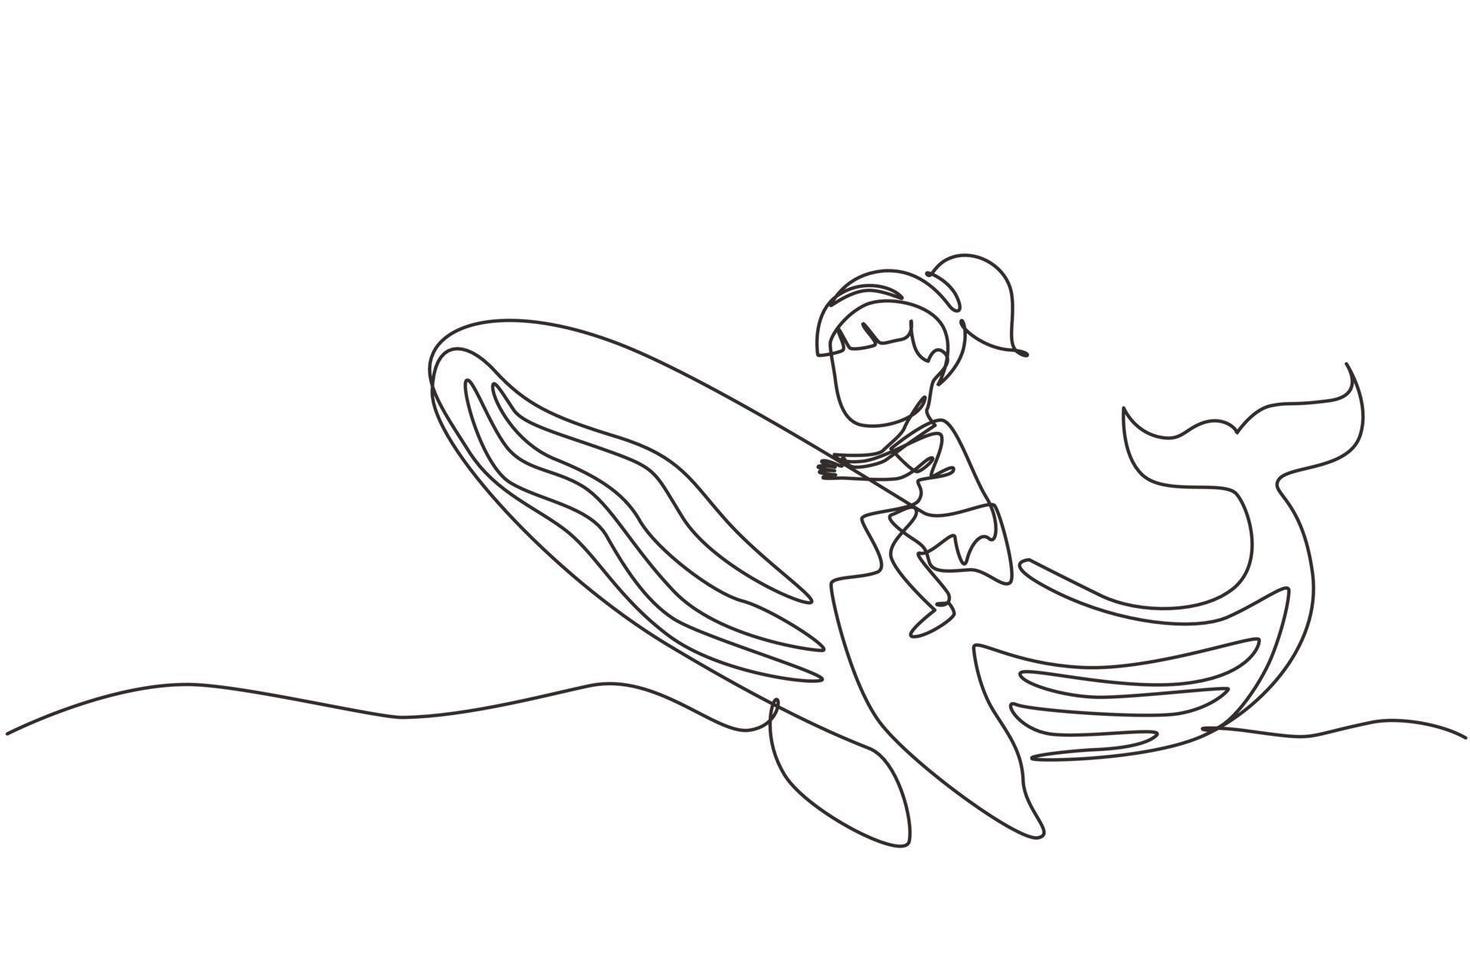 durchgehende einzeilige zeichnung kleines mädchen, das blauwal reitet. junges Kind, das am Strand auf dem Rücken des Wals sitzt. Kind lernt, großen Blauwal zu reiten. einzeiliges zeichnen design vektorgrafik illustration vektor